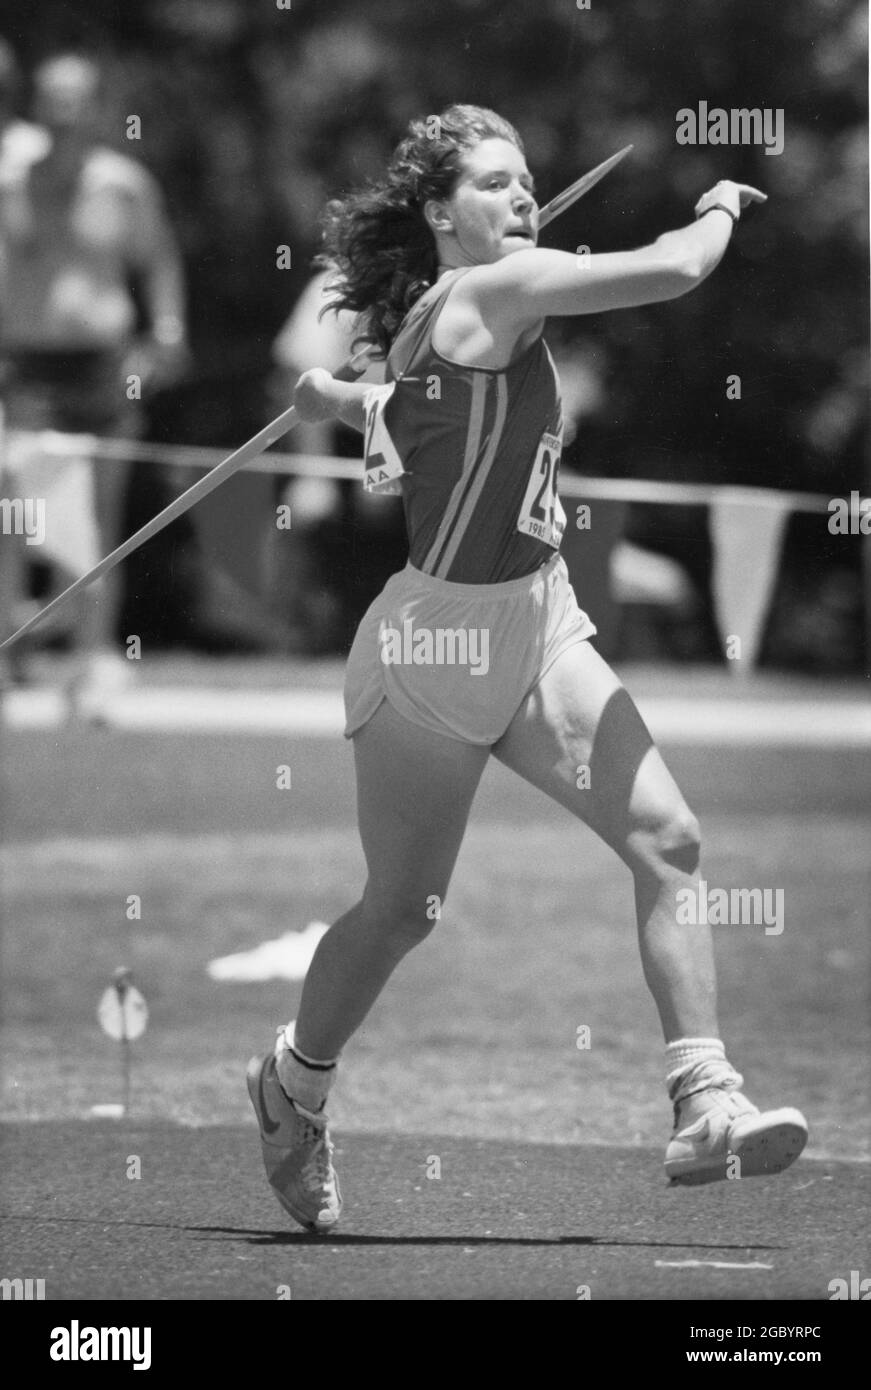 Austin Texas USA, 1992: Studente universitario femminile compete nel lancio del javelin durante i campionati di pista e campo della Divisione 1 di NCAA. ©Bob Daemmrich Foto Stock